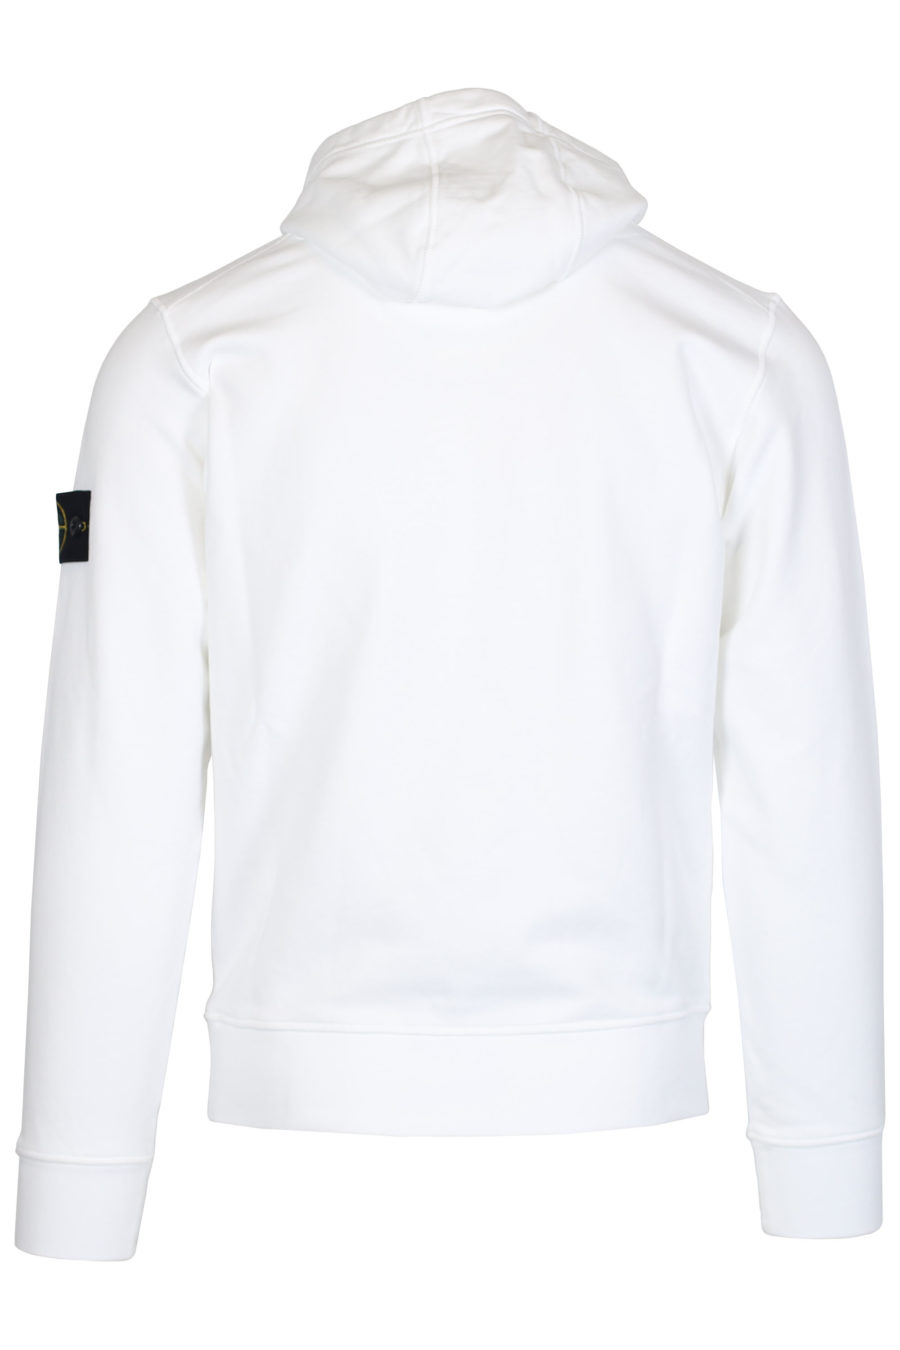 Sudadera blanca con capucha y logotipo parche - IMG 2474